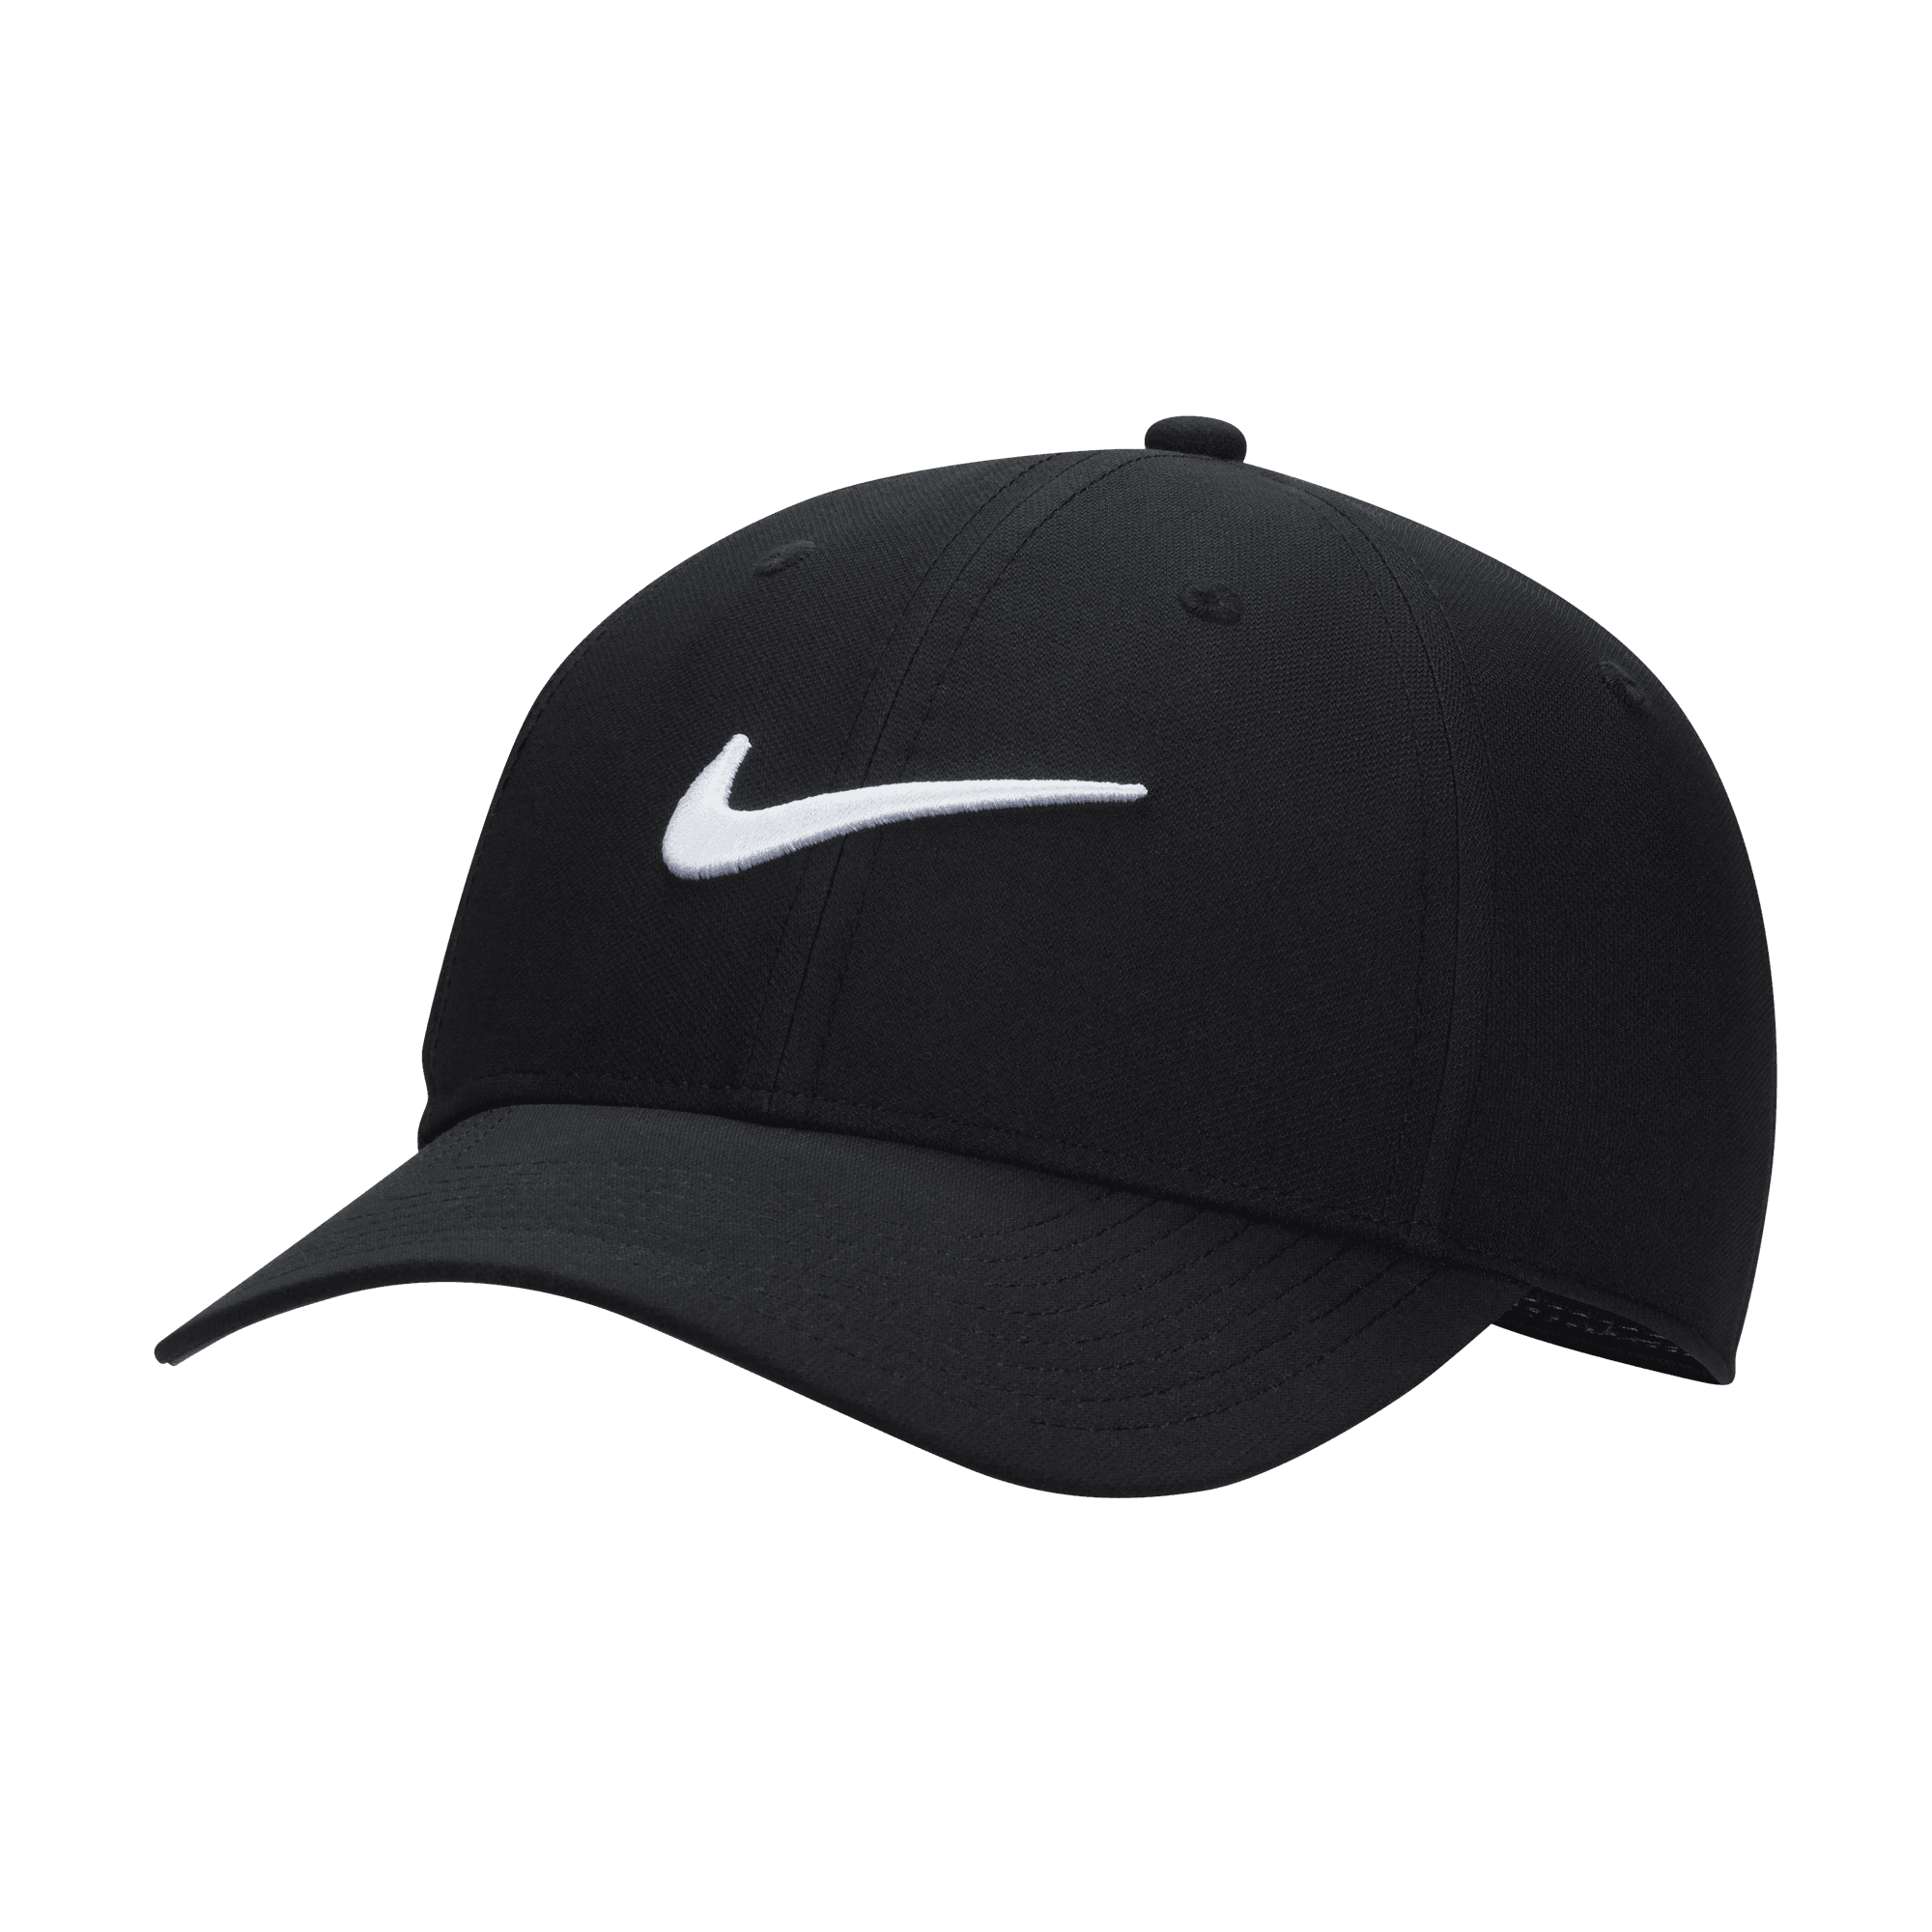 Baseball Cap »DRI-FIT CLUB STRUCTURED SWOOSH CAP«